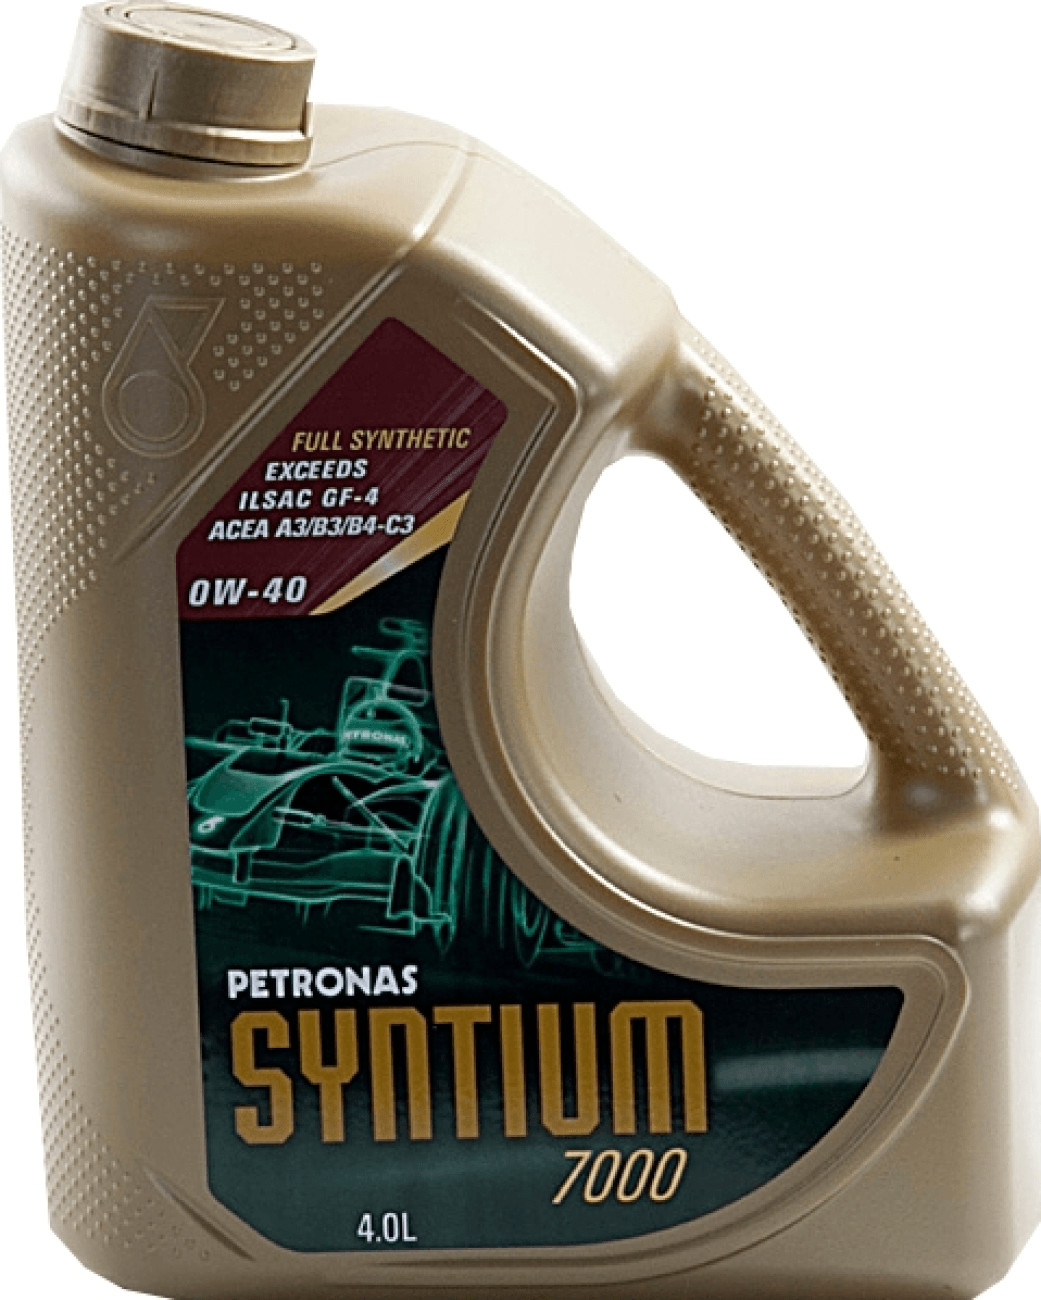 Petronas 5000 av. Петронас 5000 av 5w-30. Syntium 5000 av 5w30. Syntium 5000 av 5w-30 допуски. Petronas Syntium 5000.